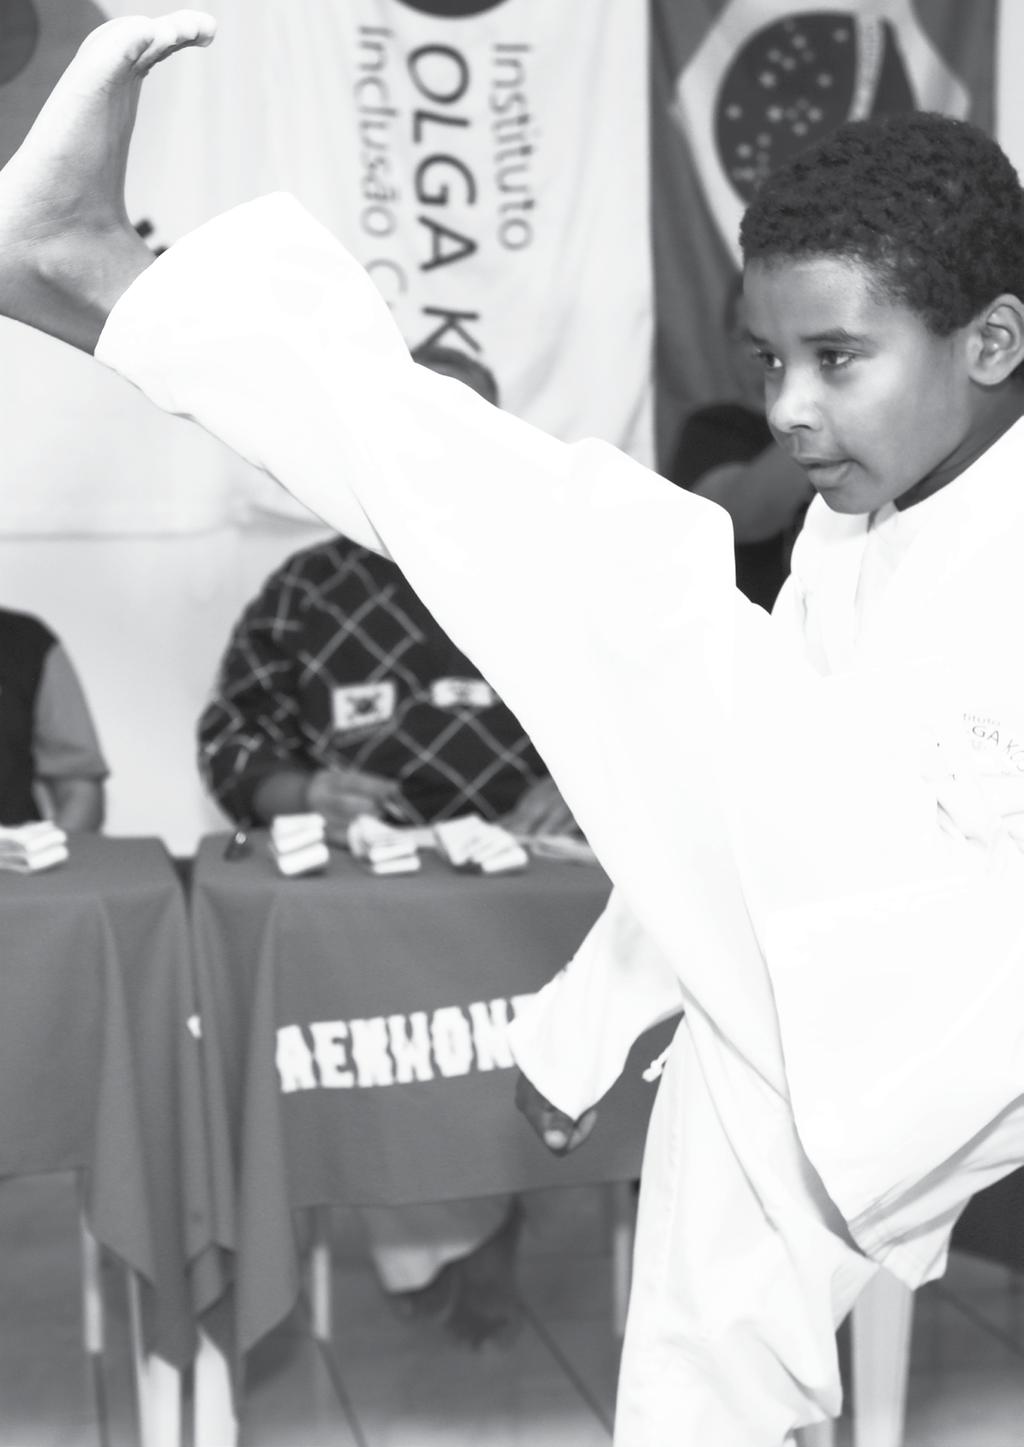 APRESENTAÇÃO No material a seguir, mostraremos como foi desenvolvido o projeto Taekwondo Kids IV.